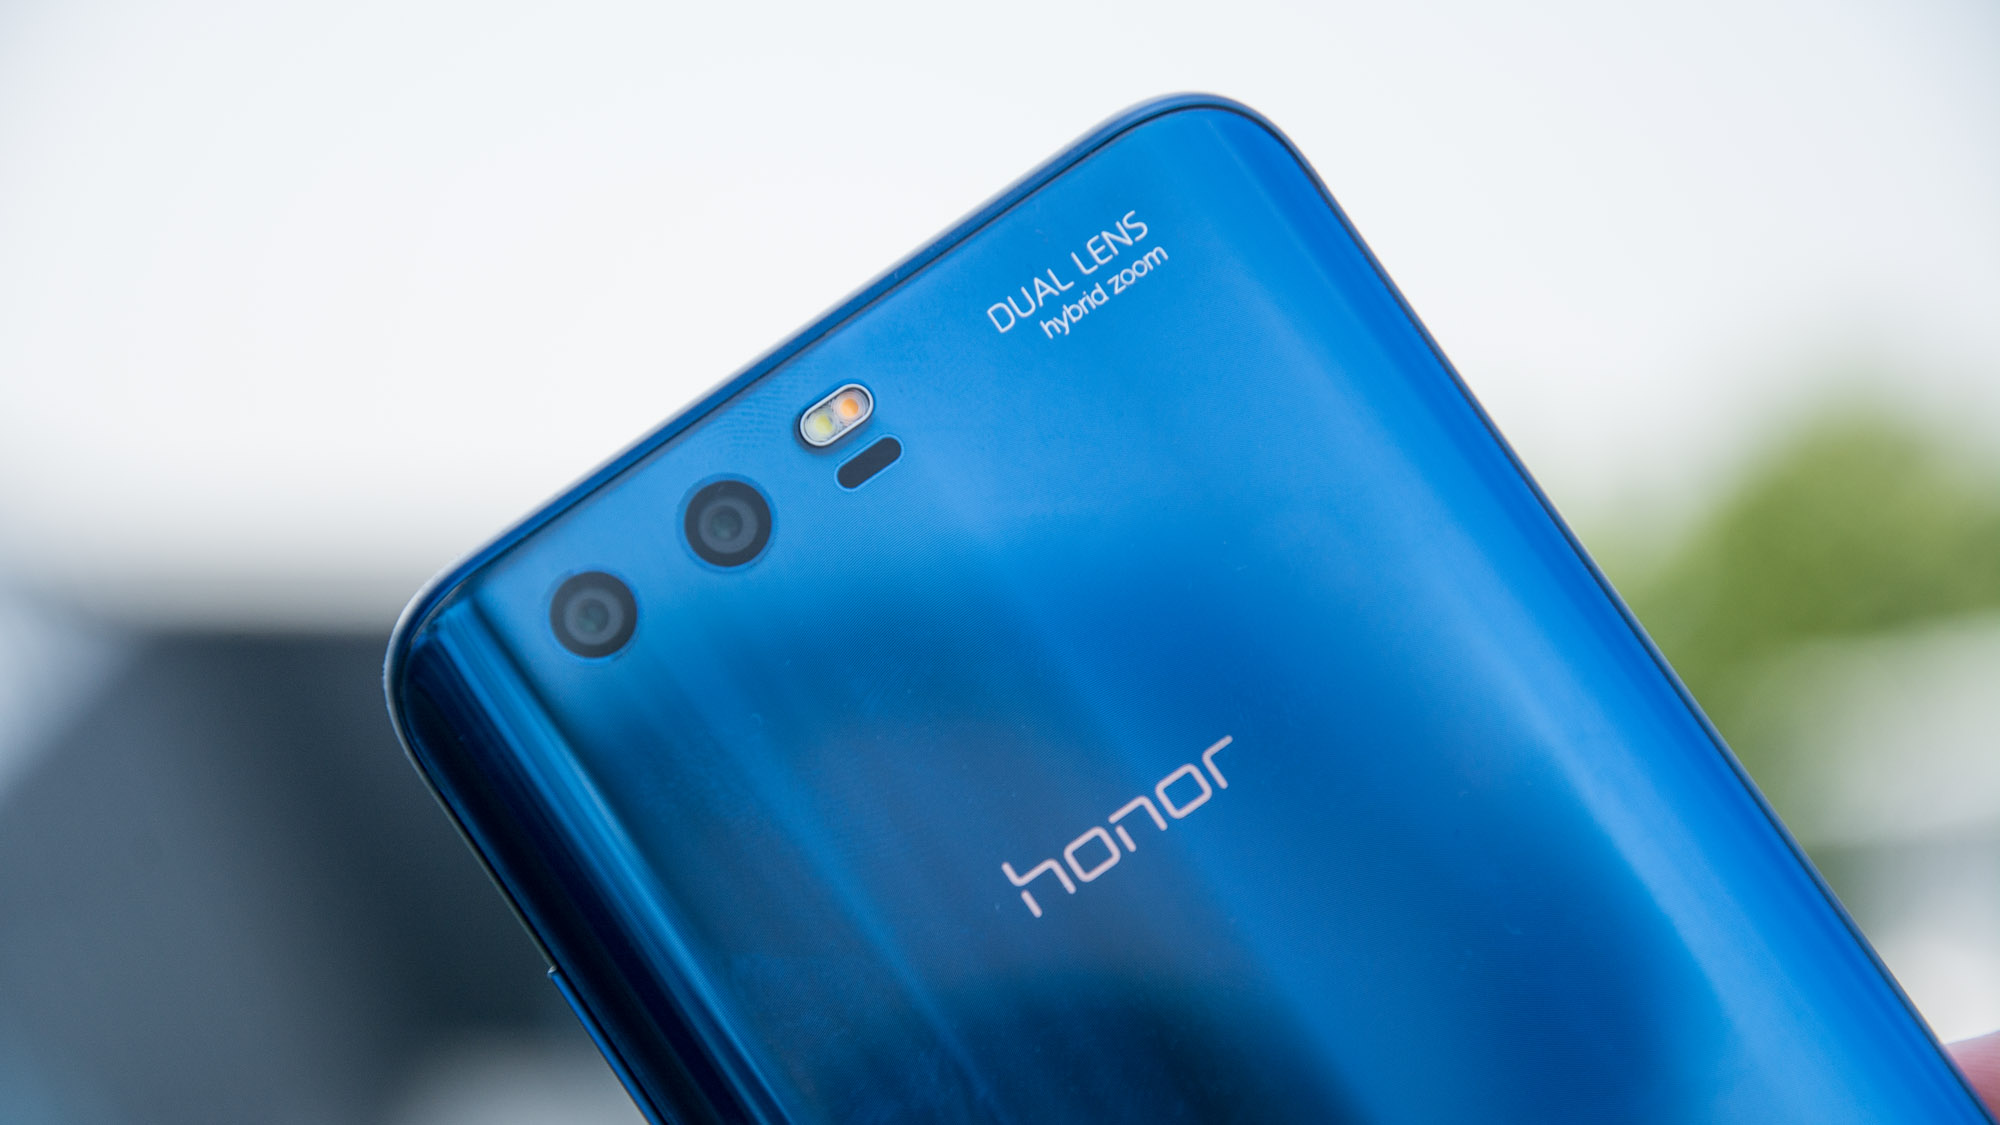 Recenzia Honor 9: Úžasný telefón, ktorý teraz stojí len 300 £